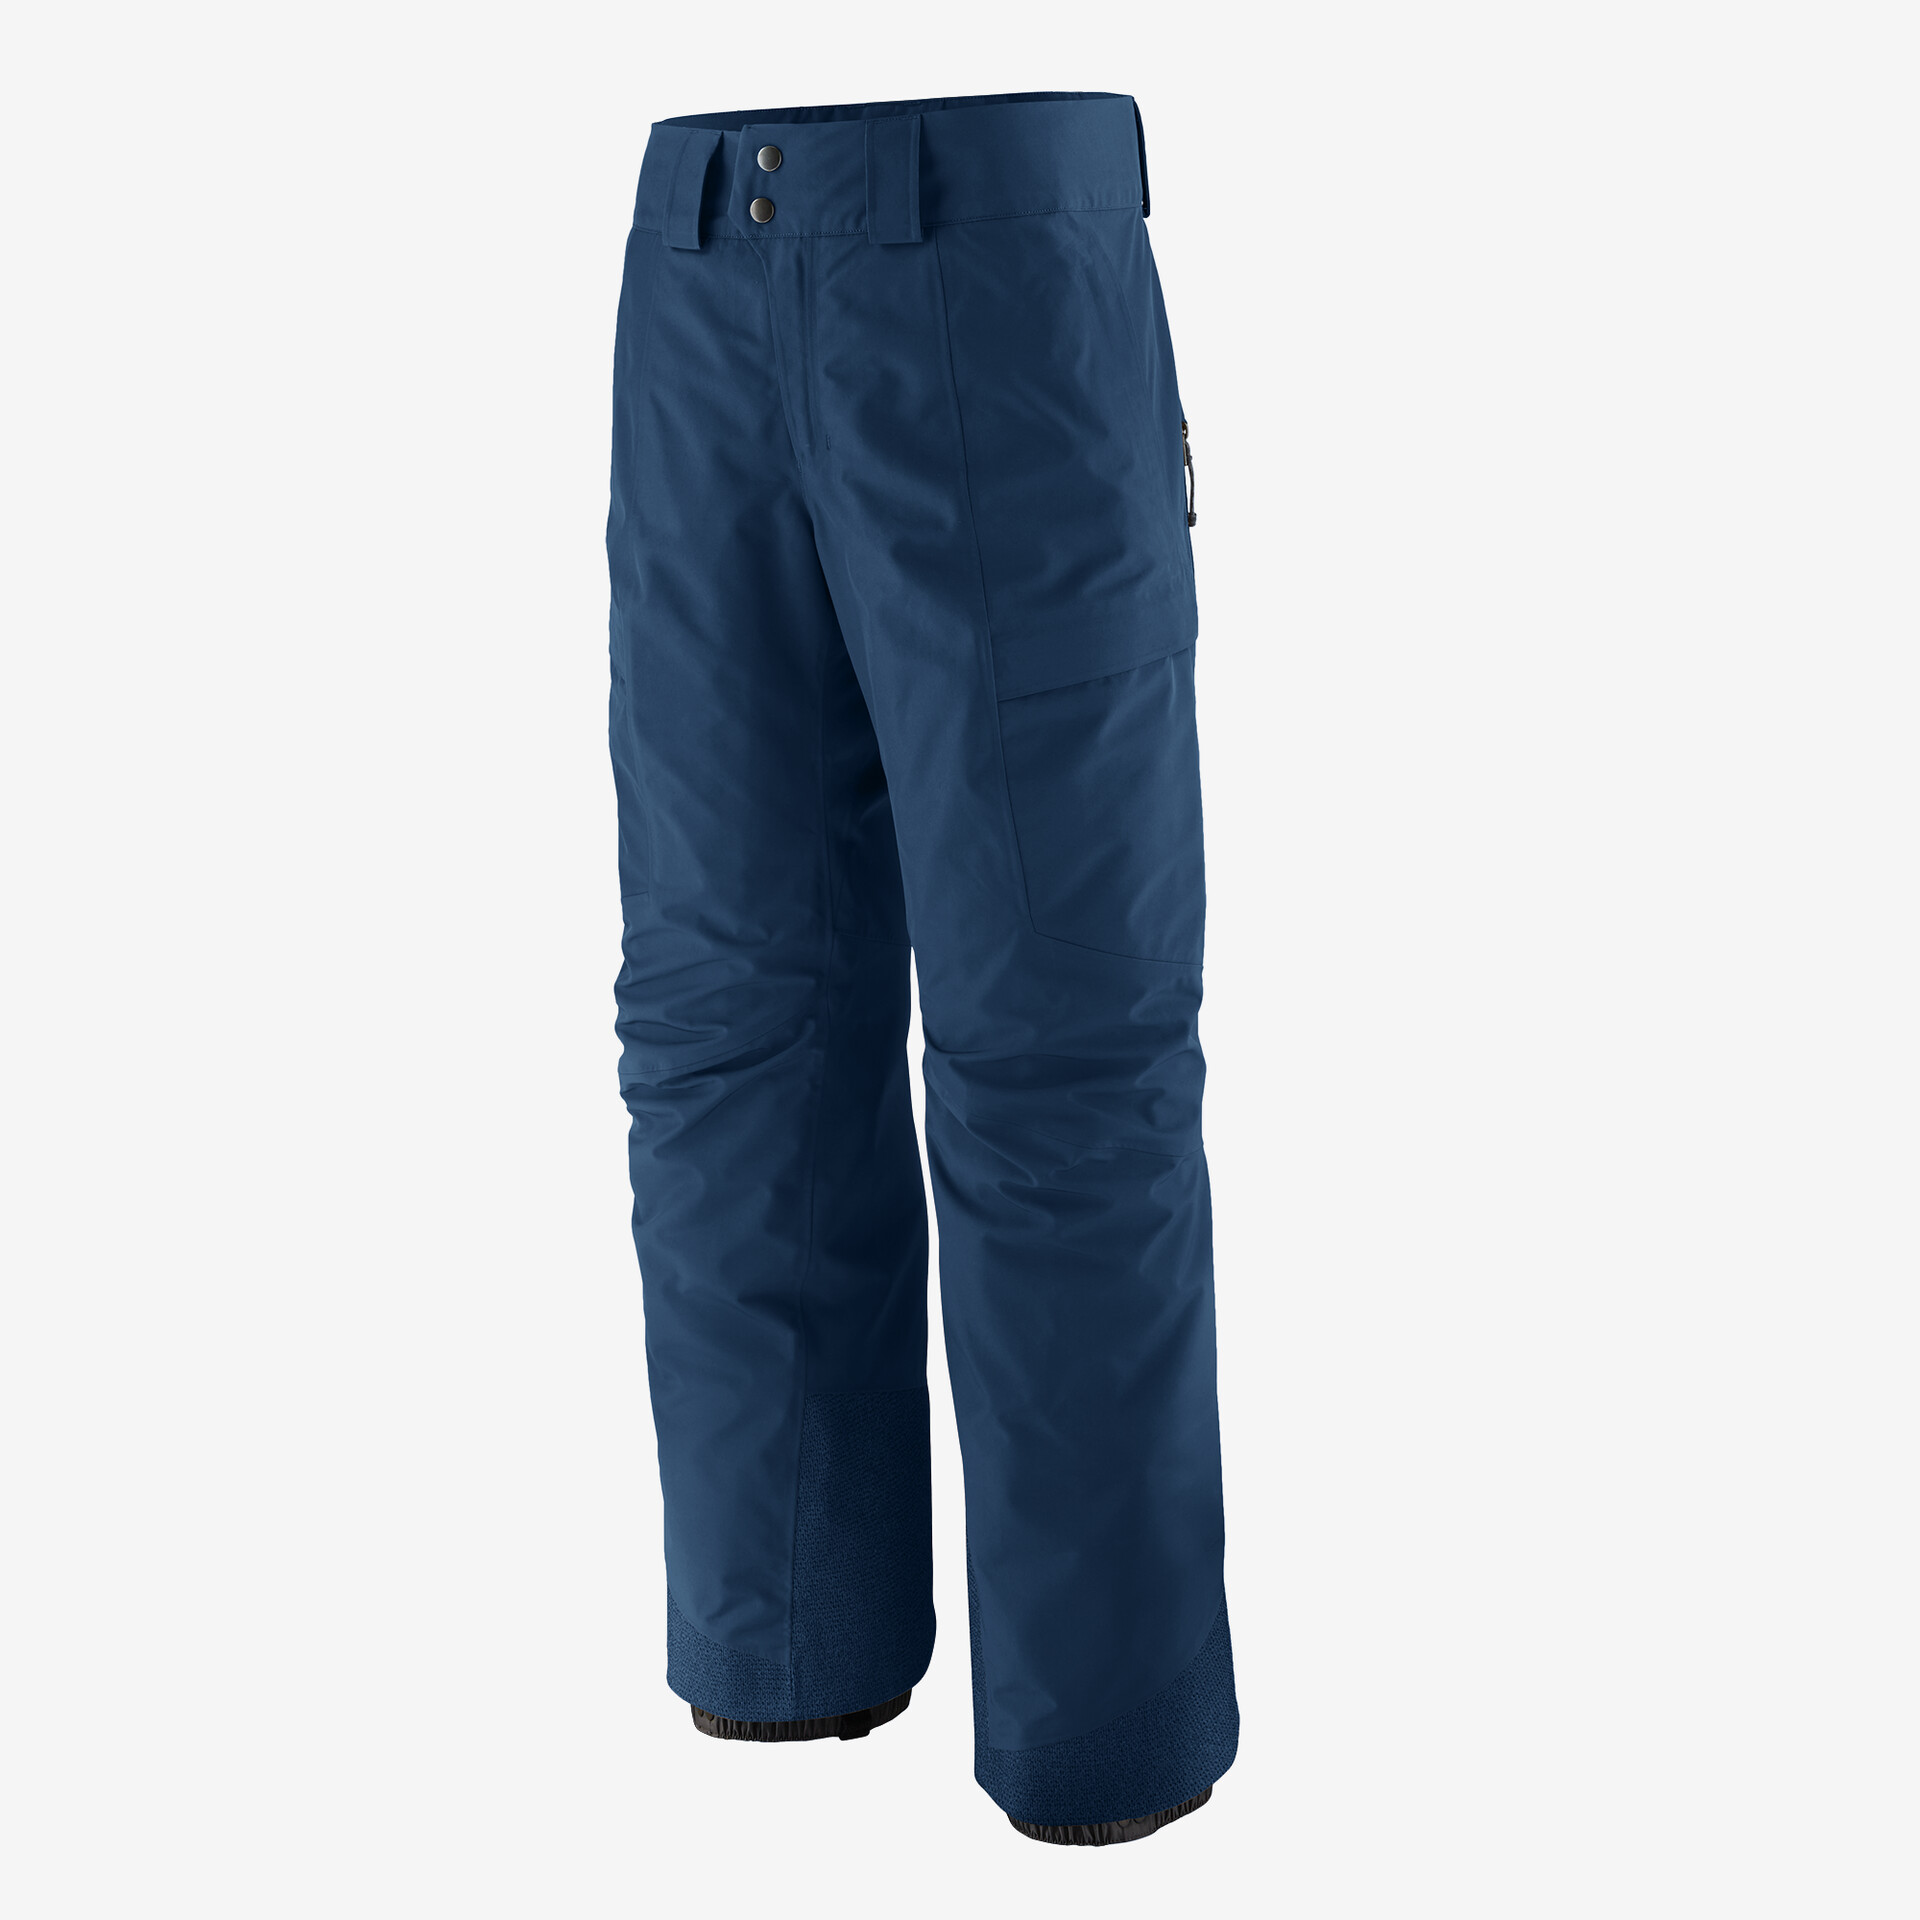 Мужские брюки Storm Shift Patagonia, лагом синий мужские брюки storm shift patagonia мус коричневый